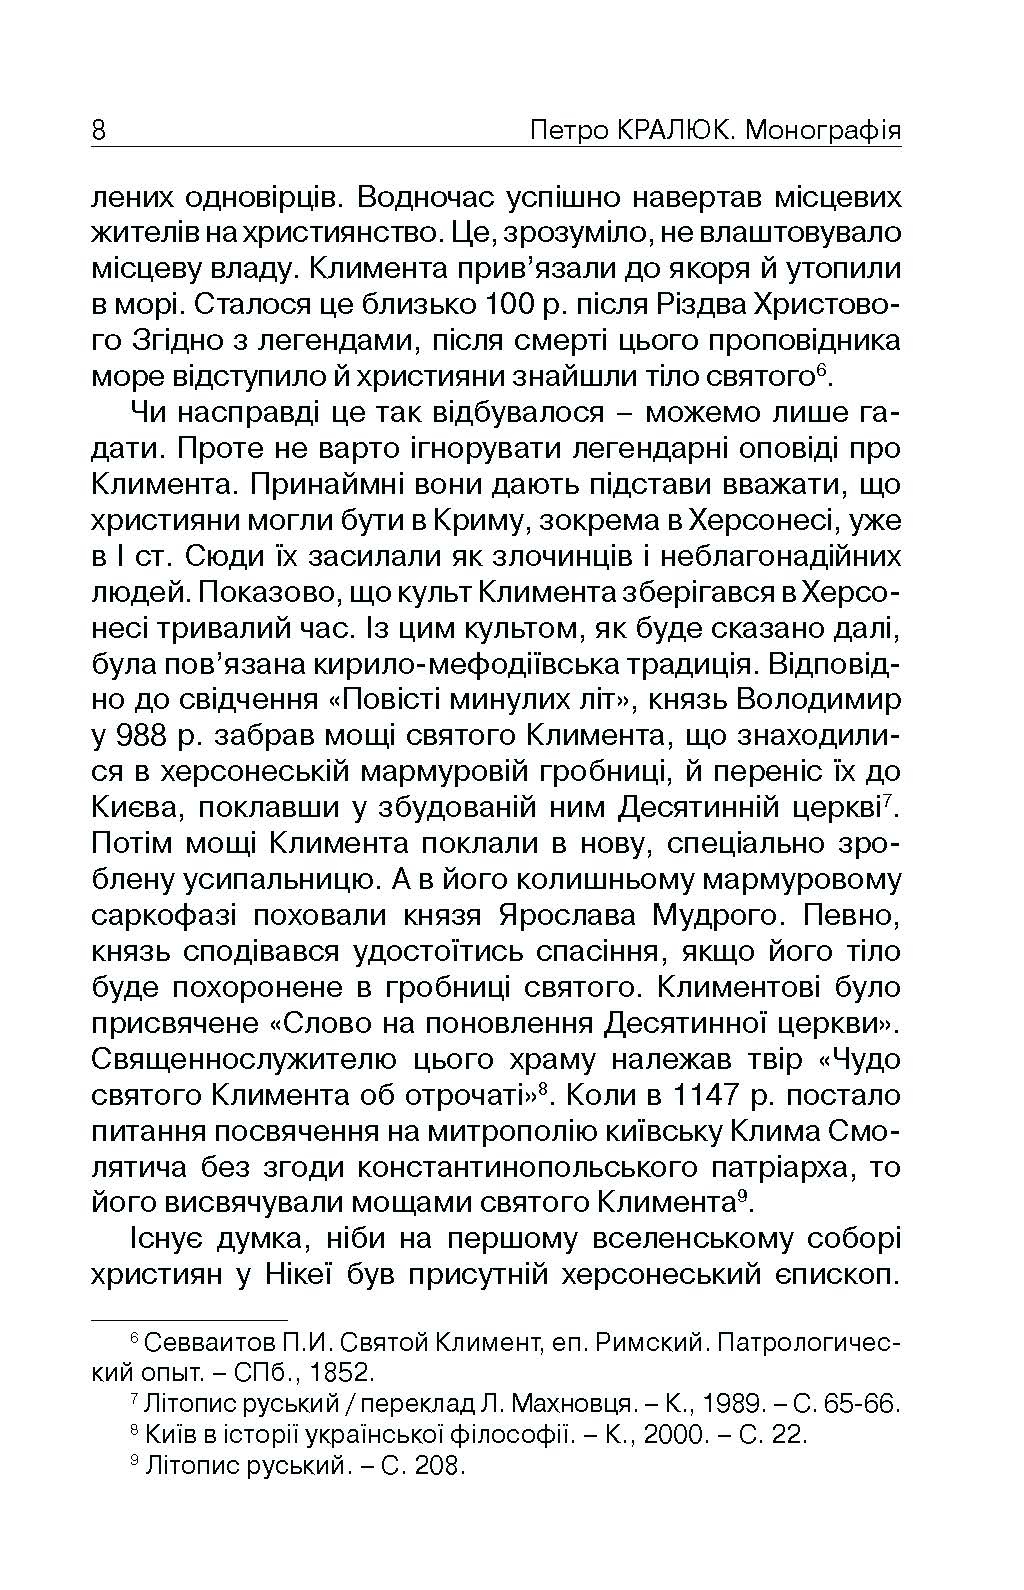 Прийняття і сприйняття християнства в Русі-Україні. Автор — Кралюк П.М.. 